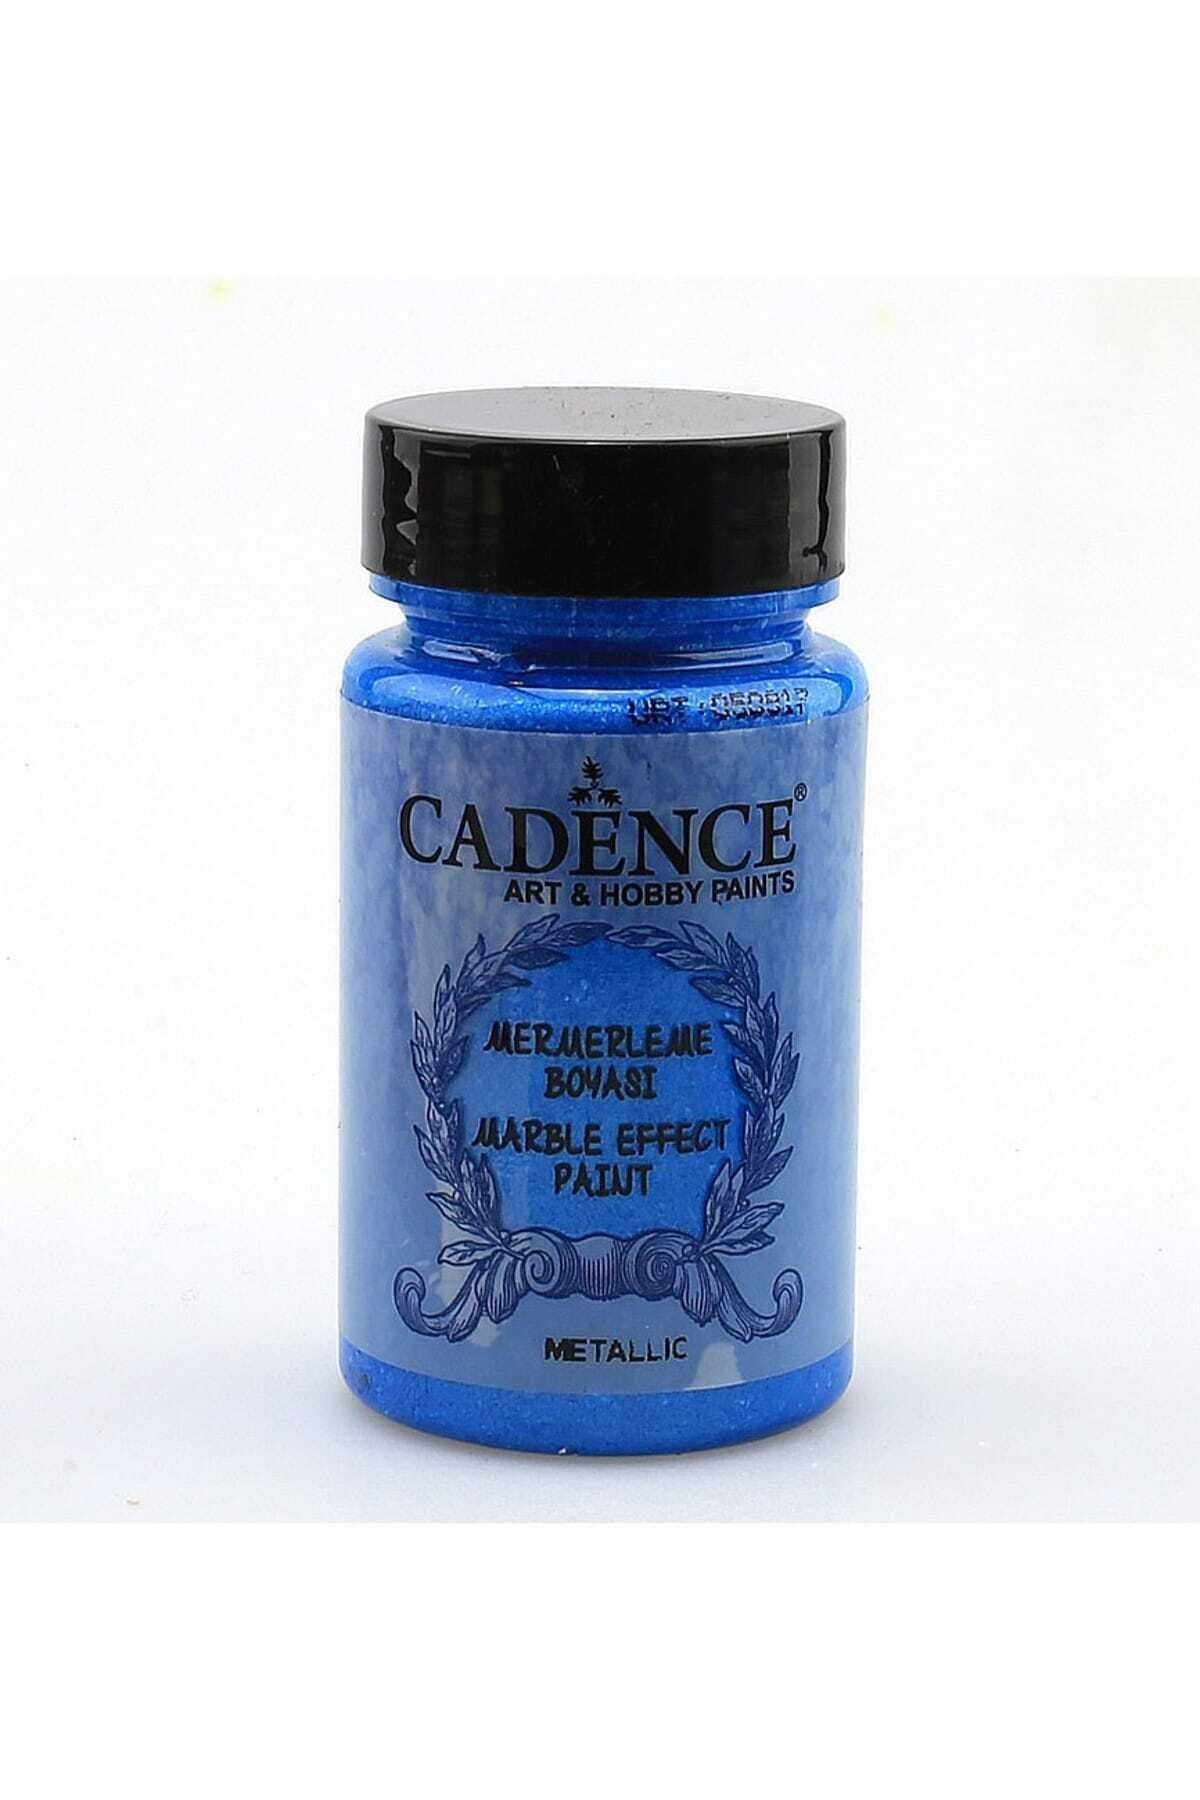 Cadence Marble Effect Mermerleme Boyası - Koyu Mavi 185